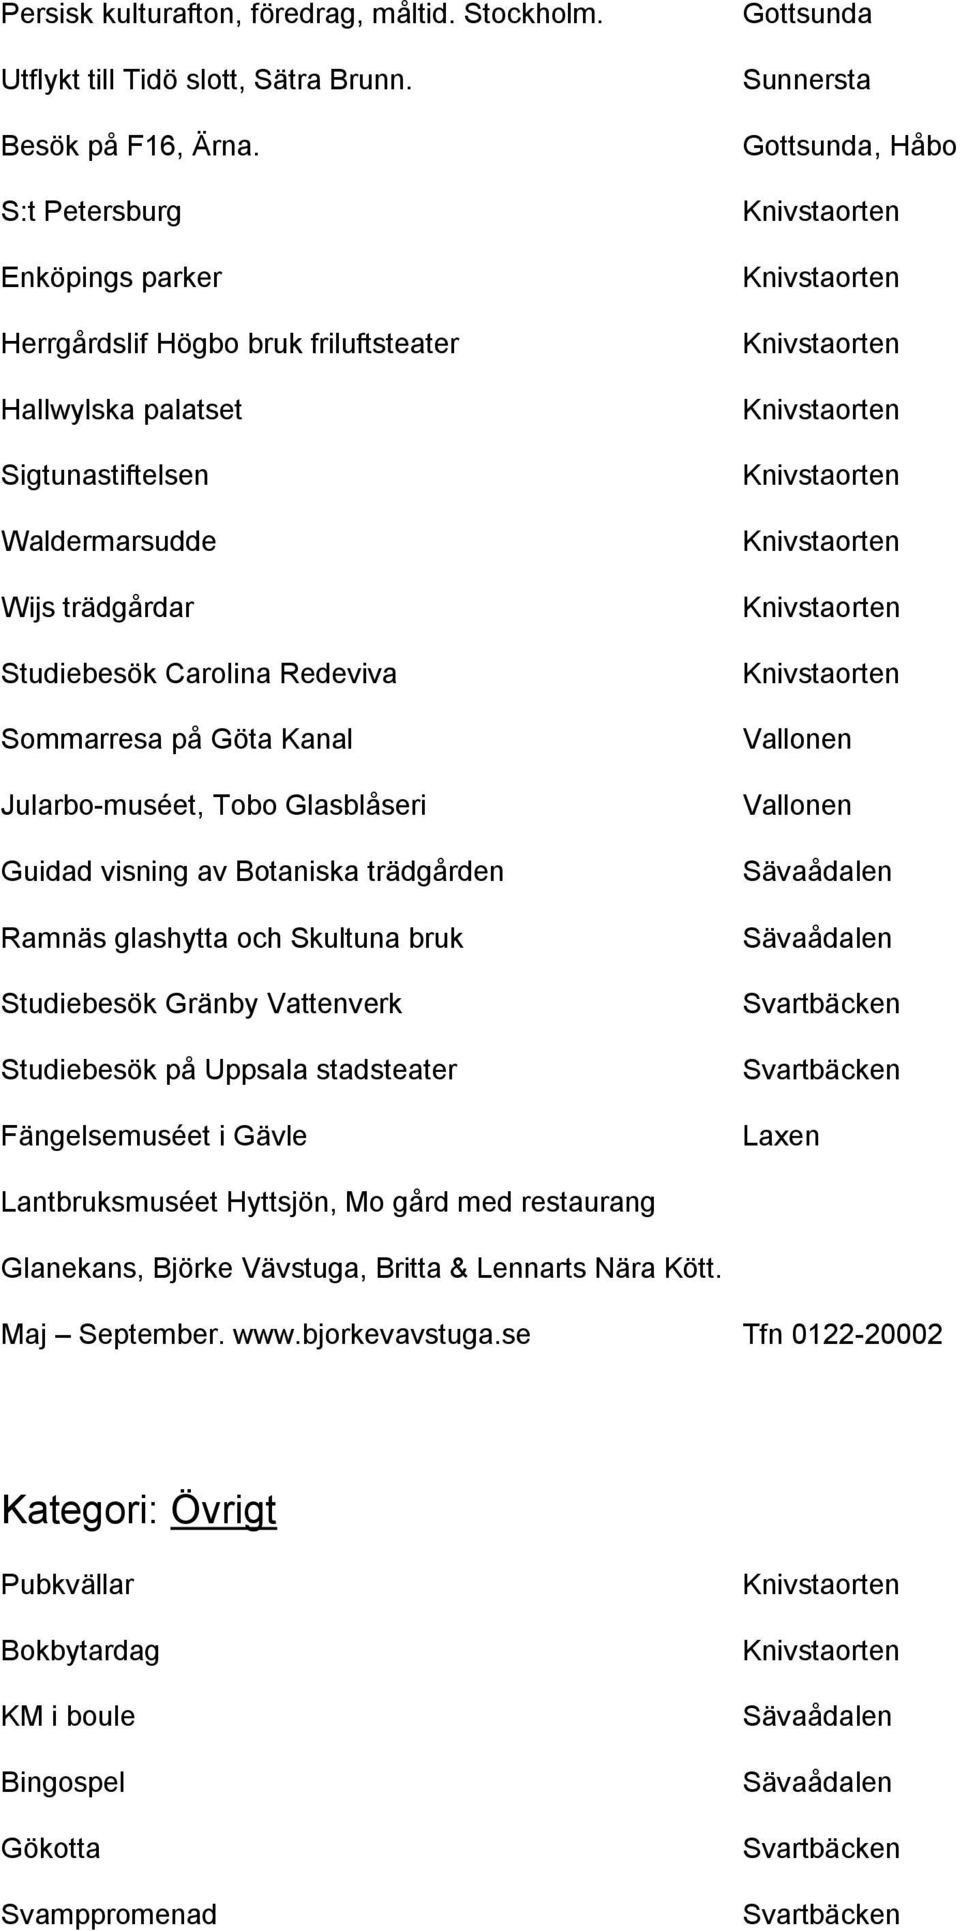 Kanal Jularbo-muséet, Tobo Glasblåseri Guidad visning av Botaniska trädgården Ramnäs glashytta och Skultuna bruk Studiebesök Gränby Vattenverk Studiebesök på Uppsala stadsteater Fängelsemuséet